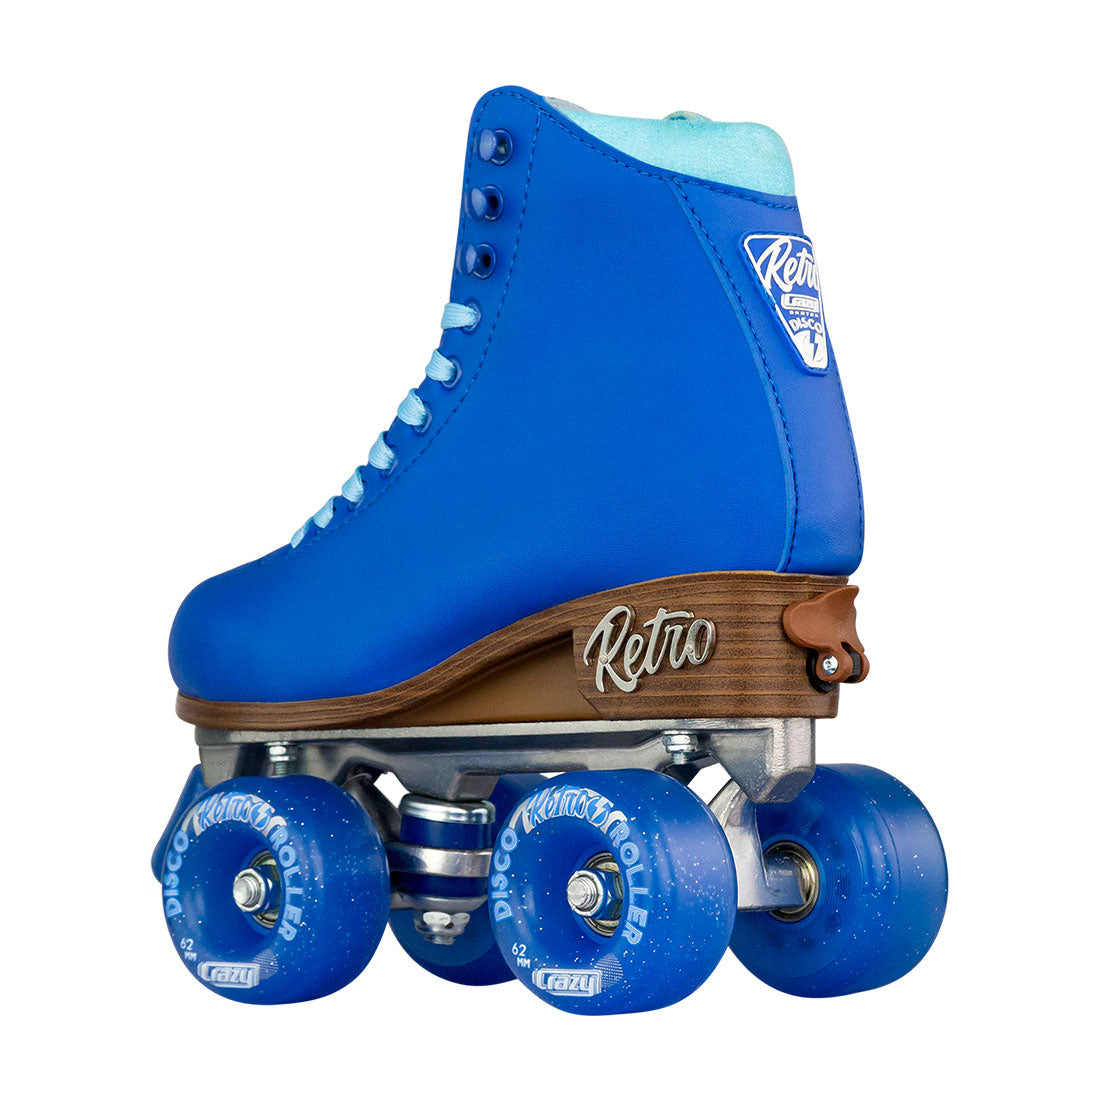 Crazy Retro Roller Blue - Kids Adjustable Roller Skates